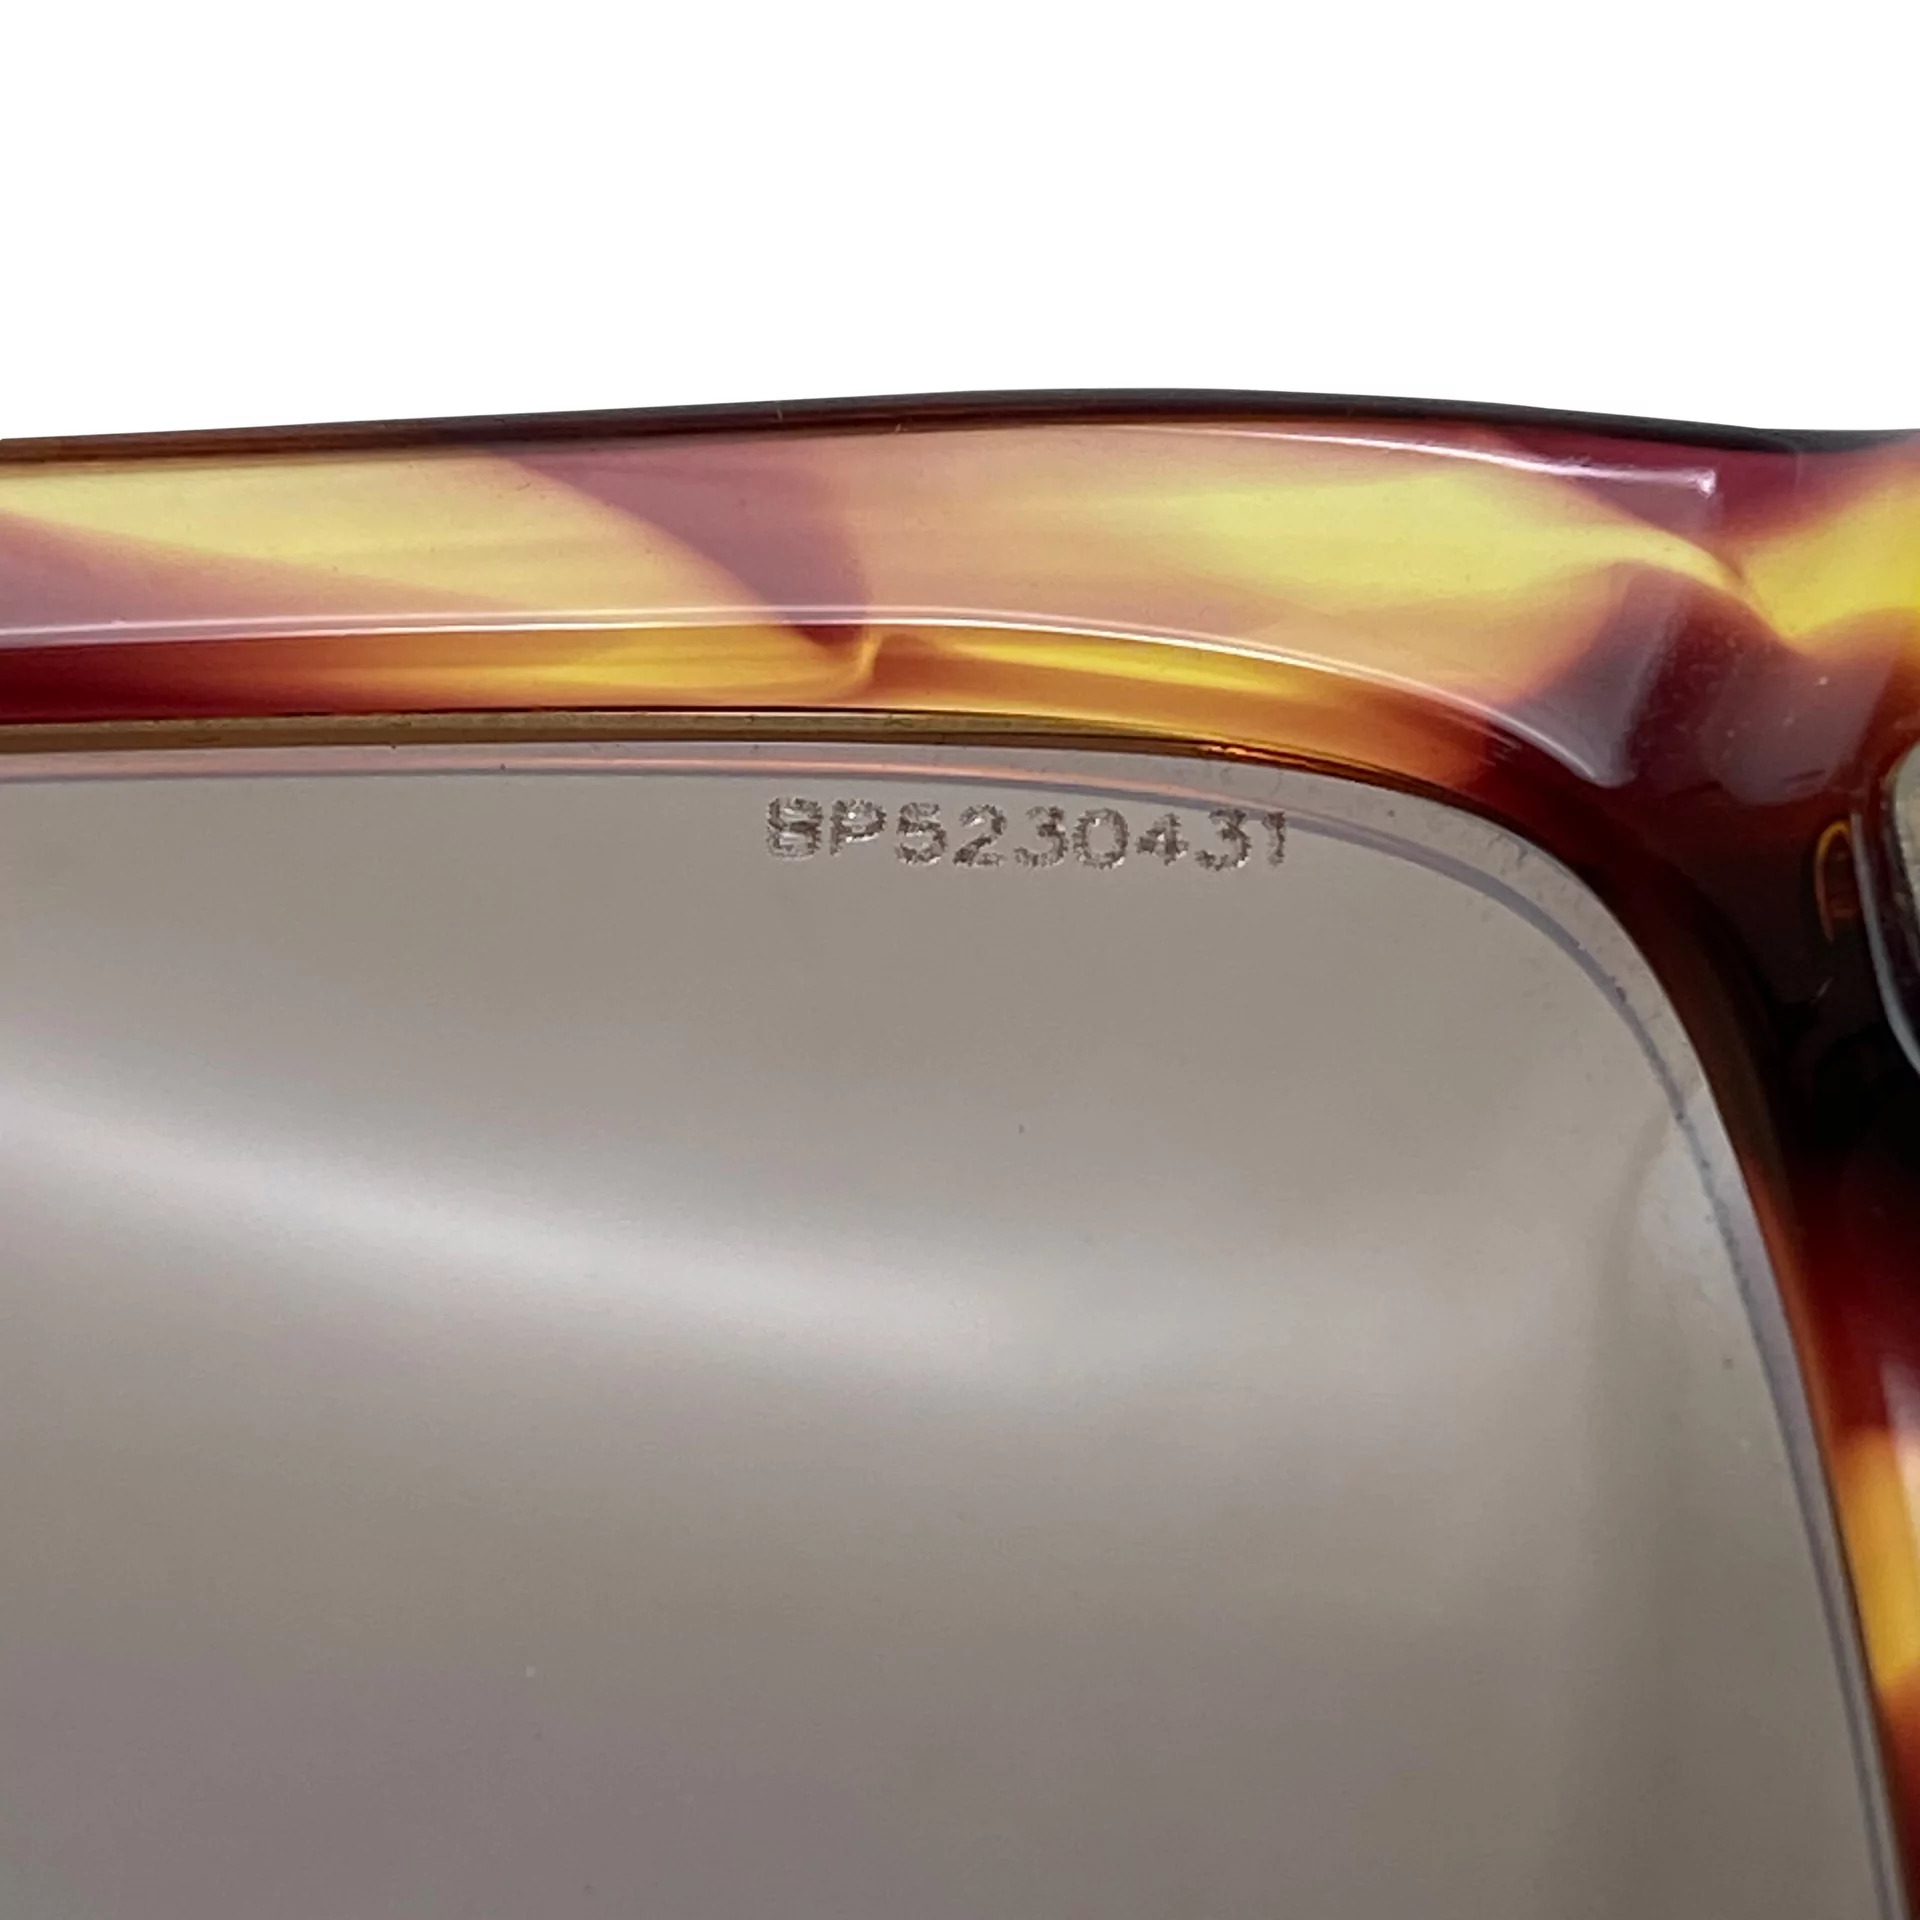 Óculos de Sol Prada - SPR 02M